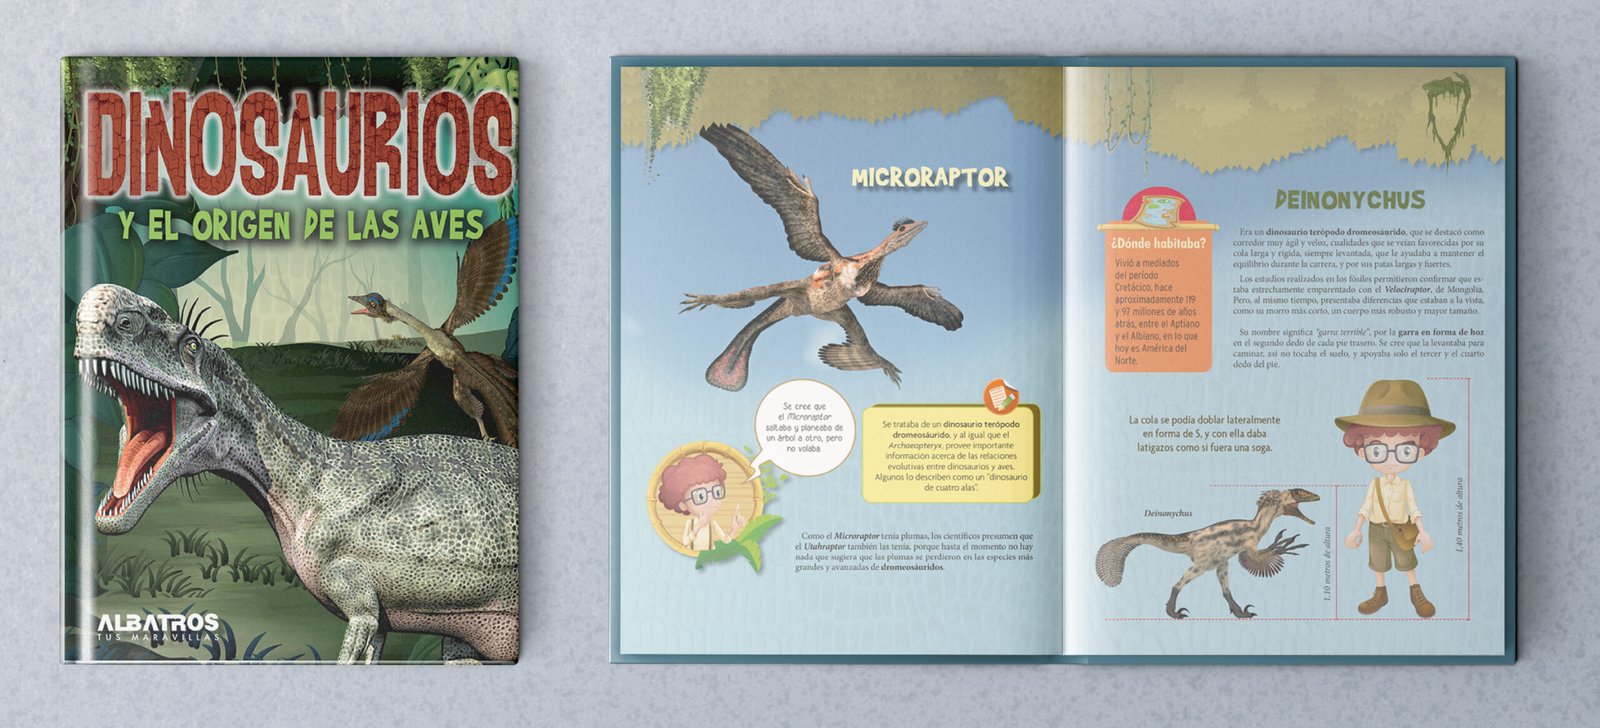 Libro Dinosaurios publicado por Albatros